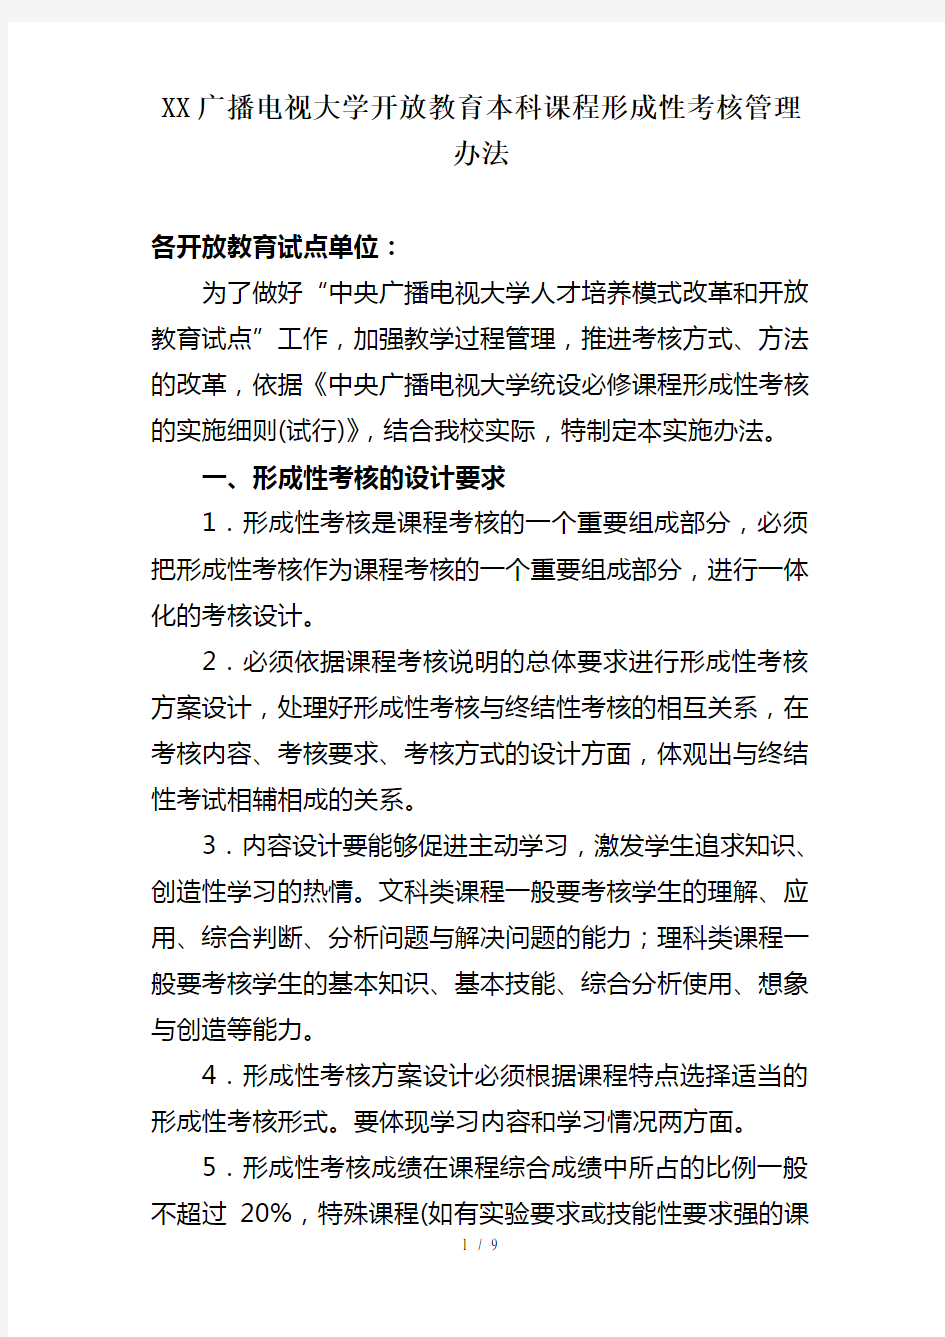 重庆广播电视大学开放教育本科课程形成性考核管理办法